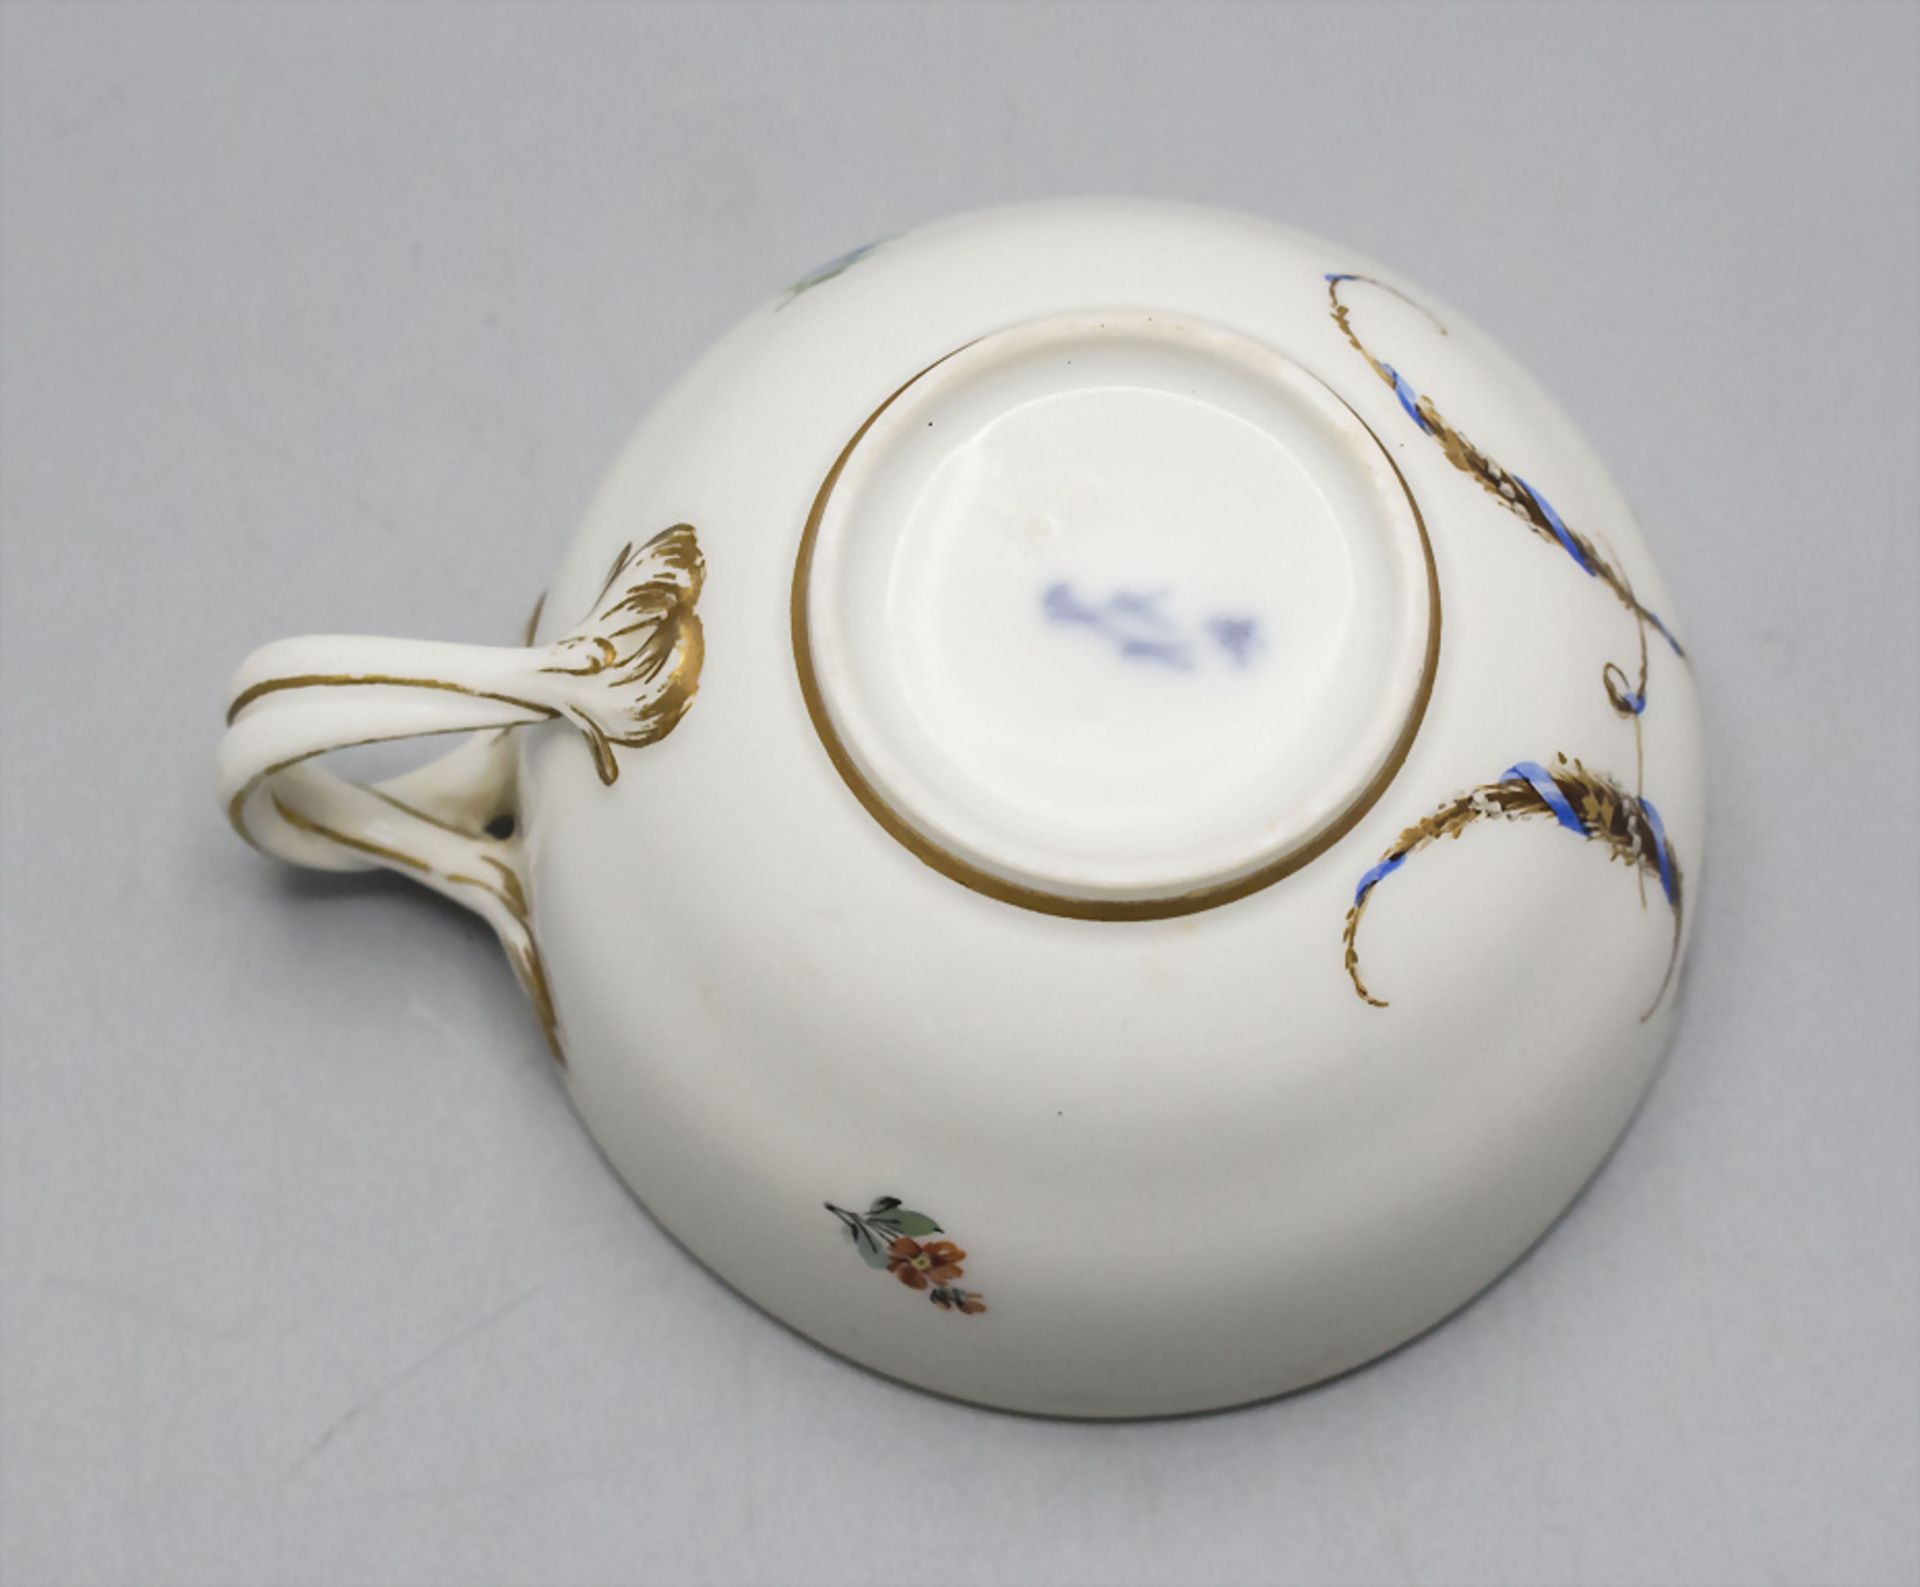 2 Porzellan Tassen mit Untertassen / Two cups with saucers, Meissen, Marcollini-Zeit 1774-1814 - Image 7 of 13